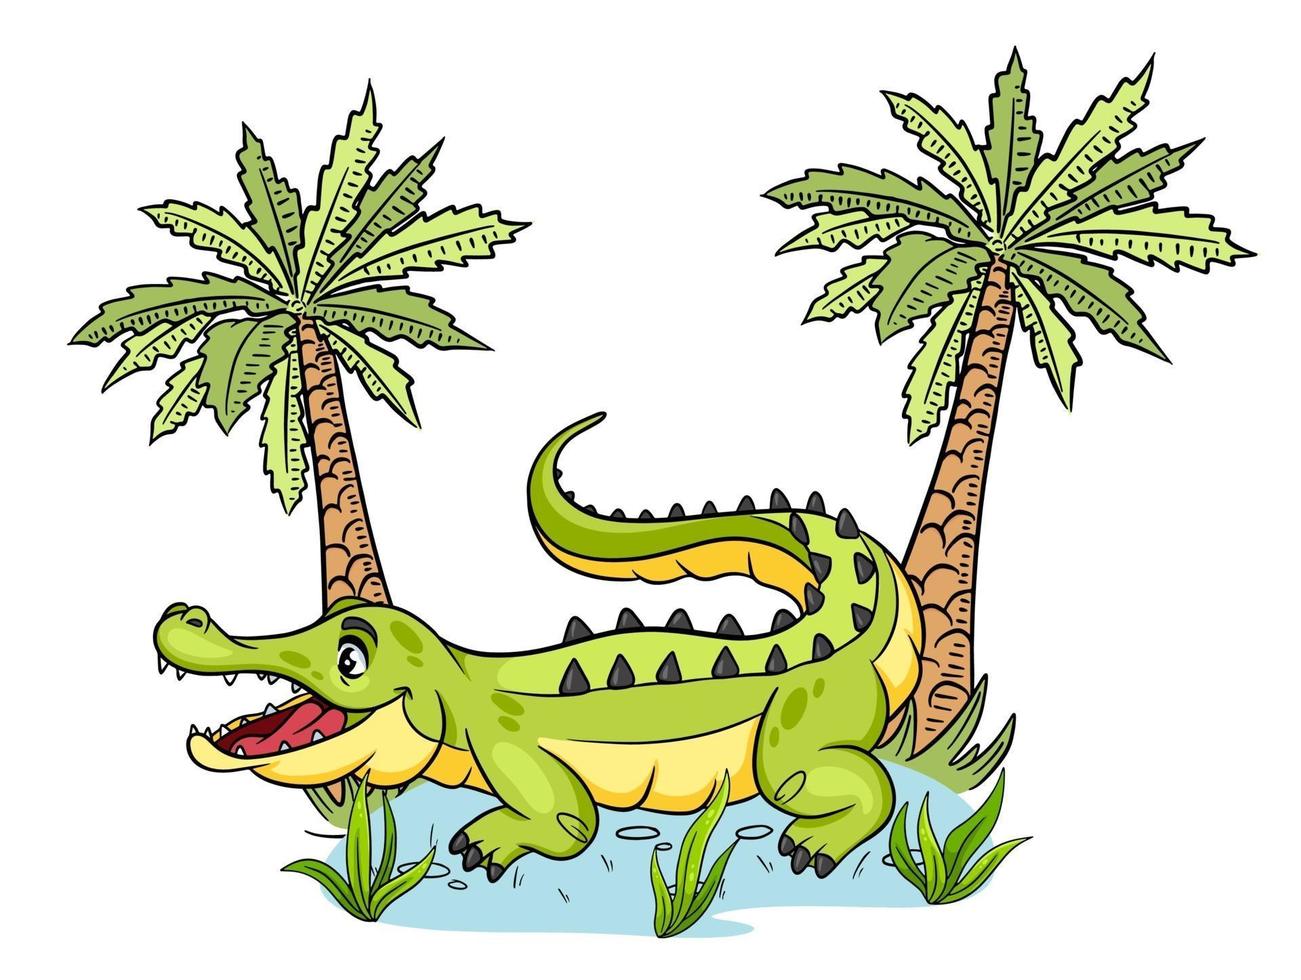 cocodrilo divertido personaje animal en estilo de dibujos animados. ilustración infantil. vector